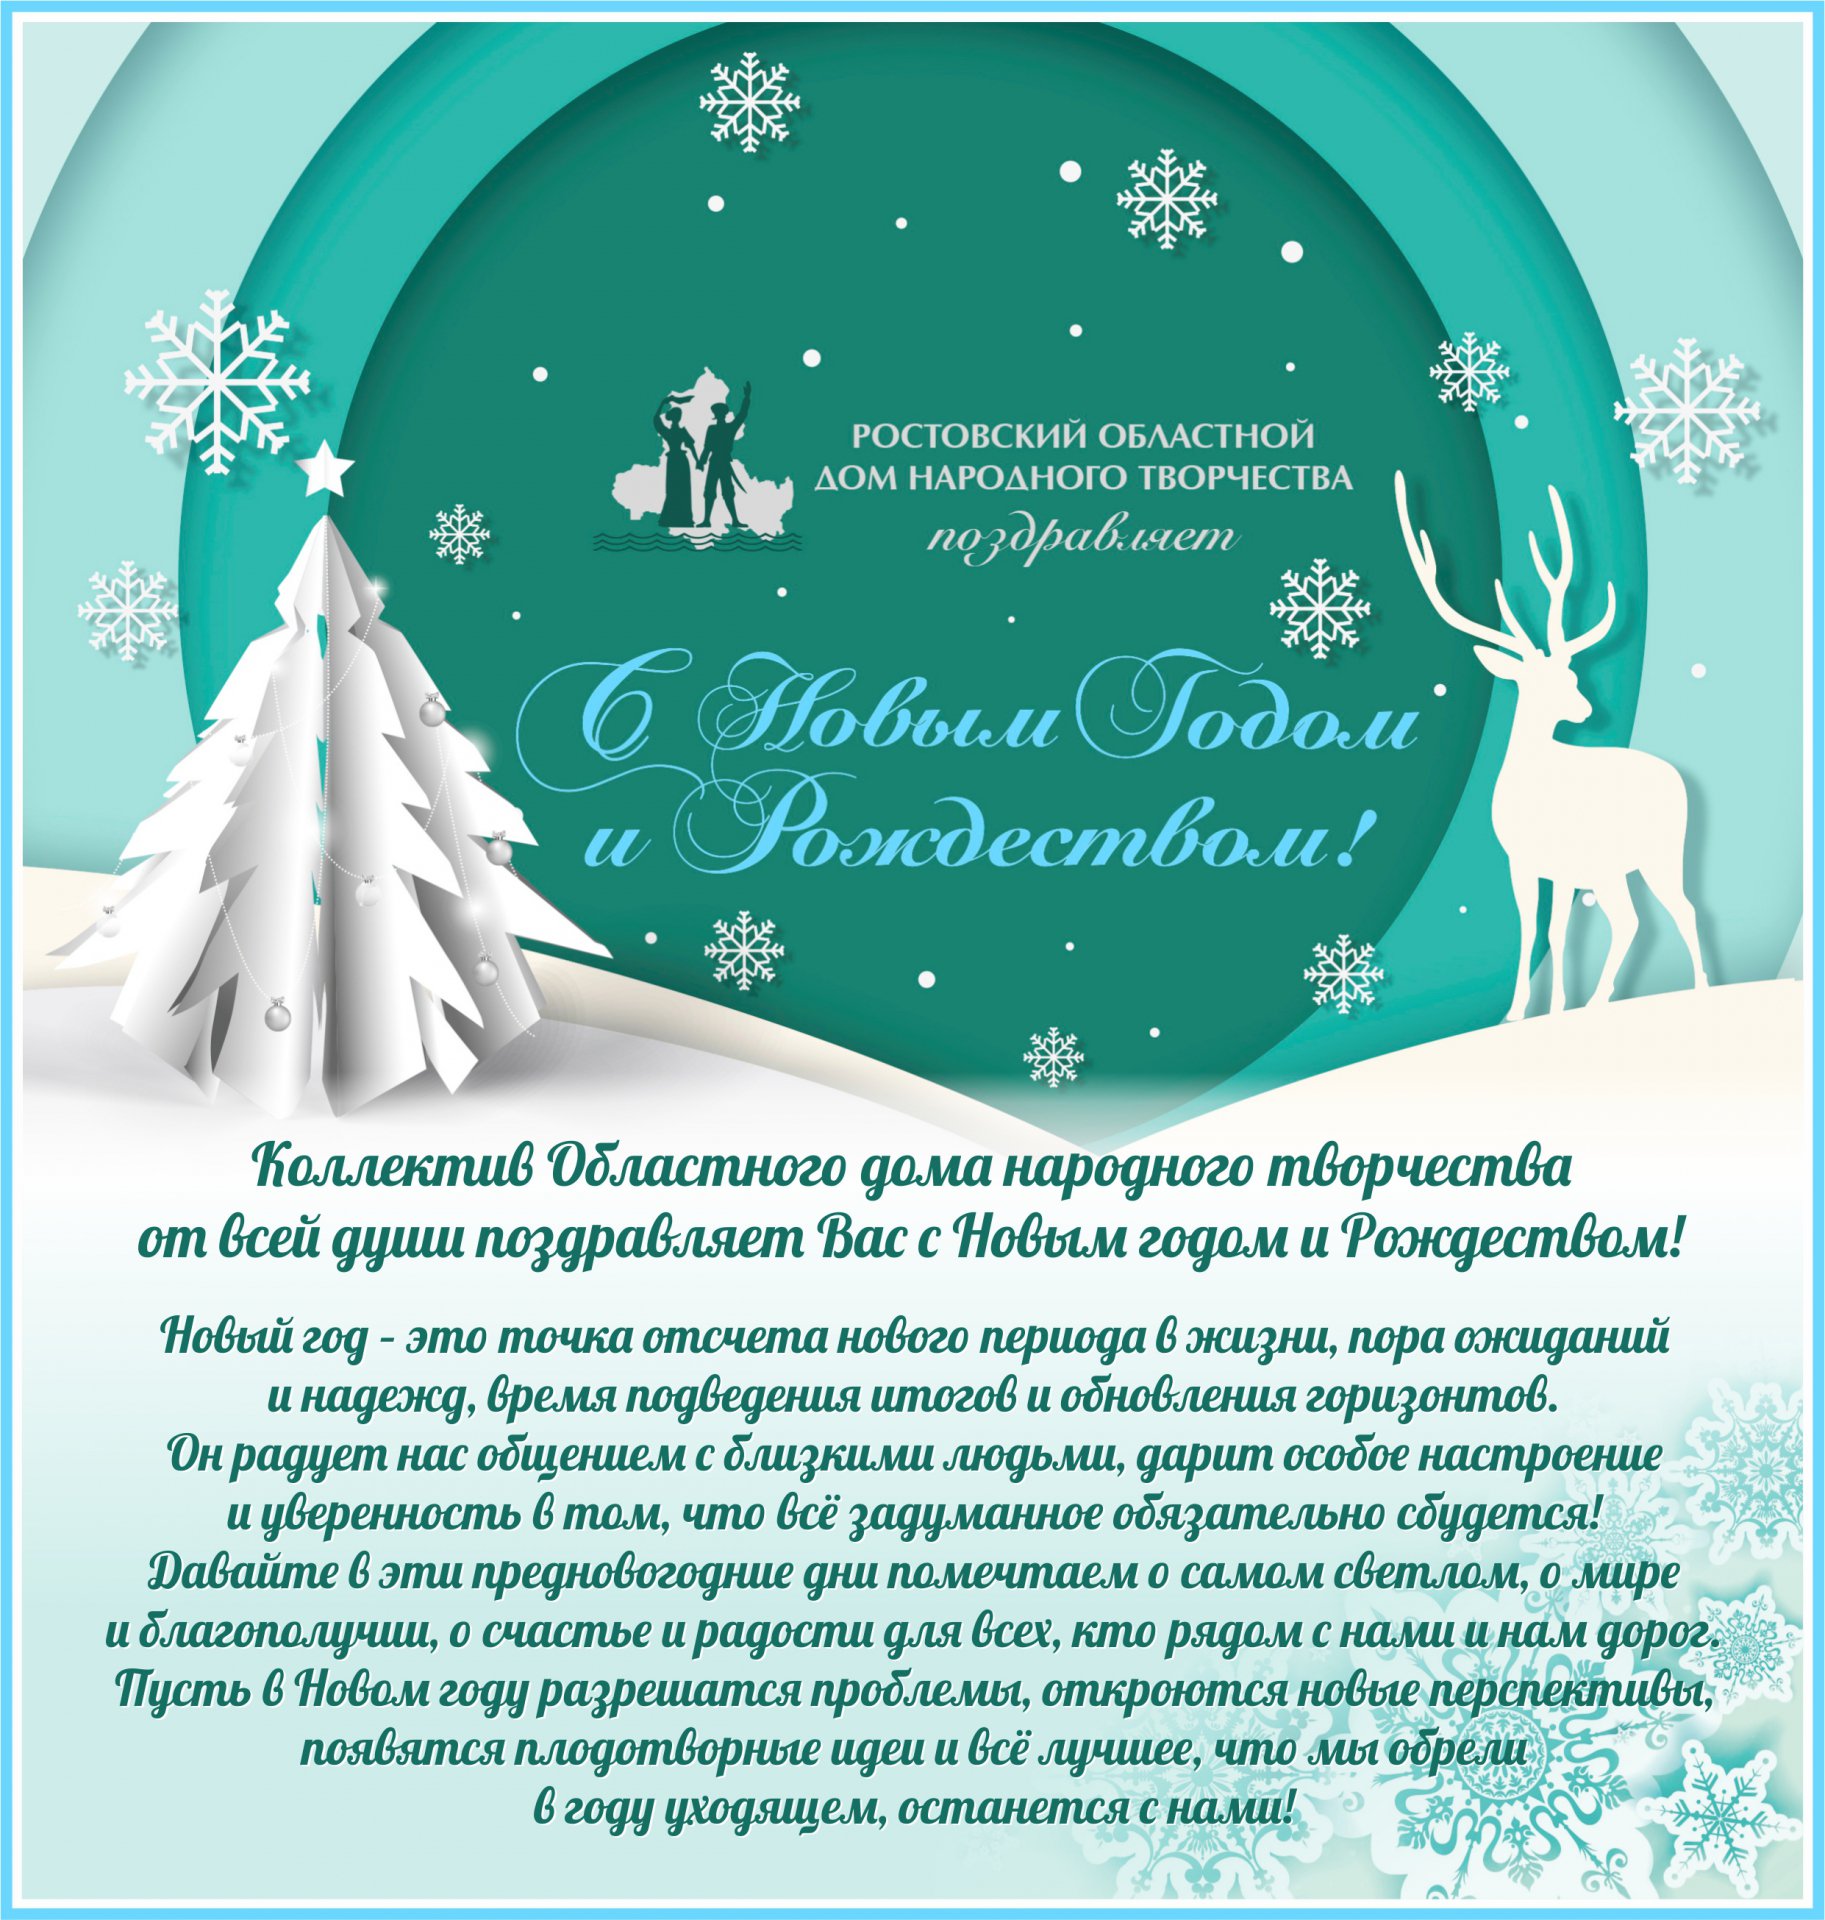 Алексей Русских получил поздравление с Новым годом и Рождеством от Председателя Правительства РФ